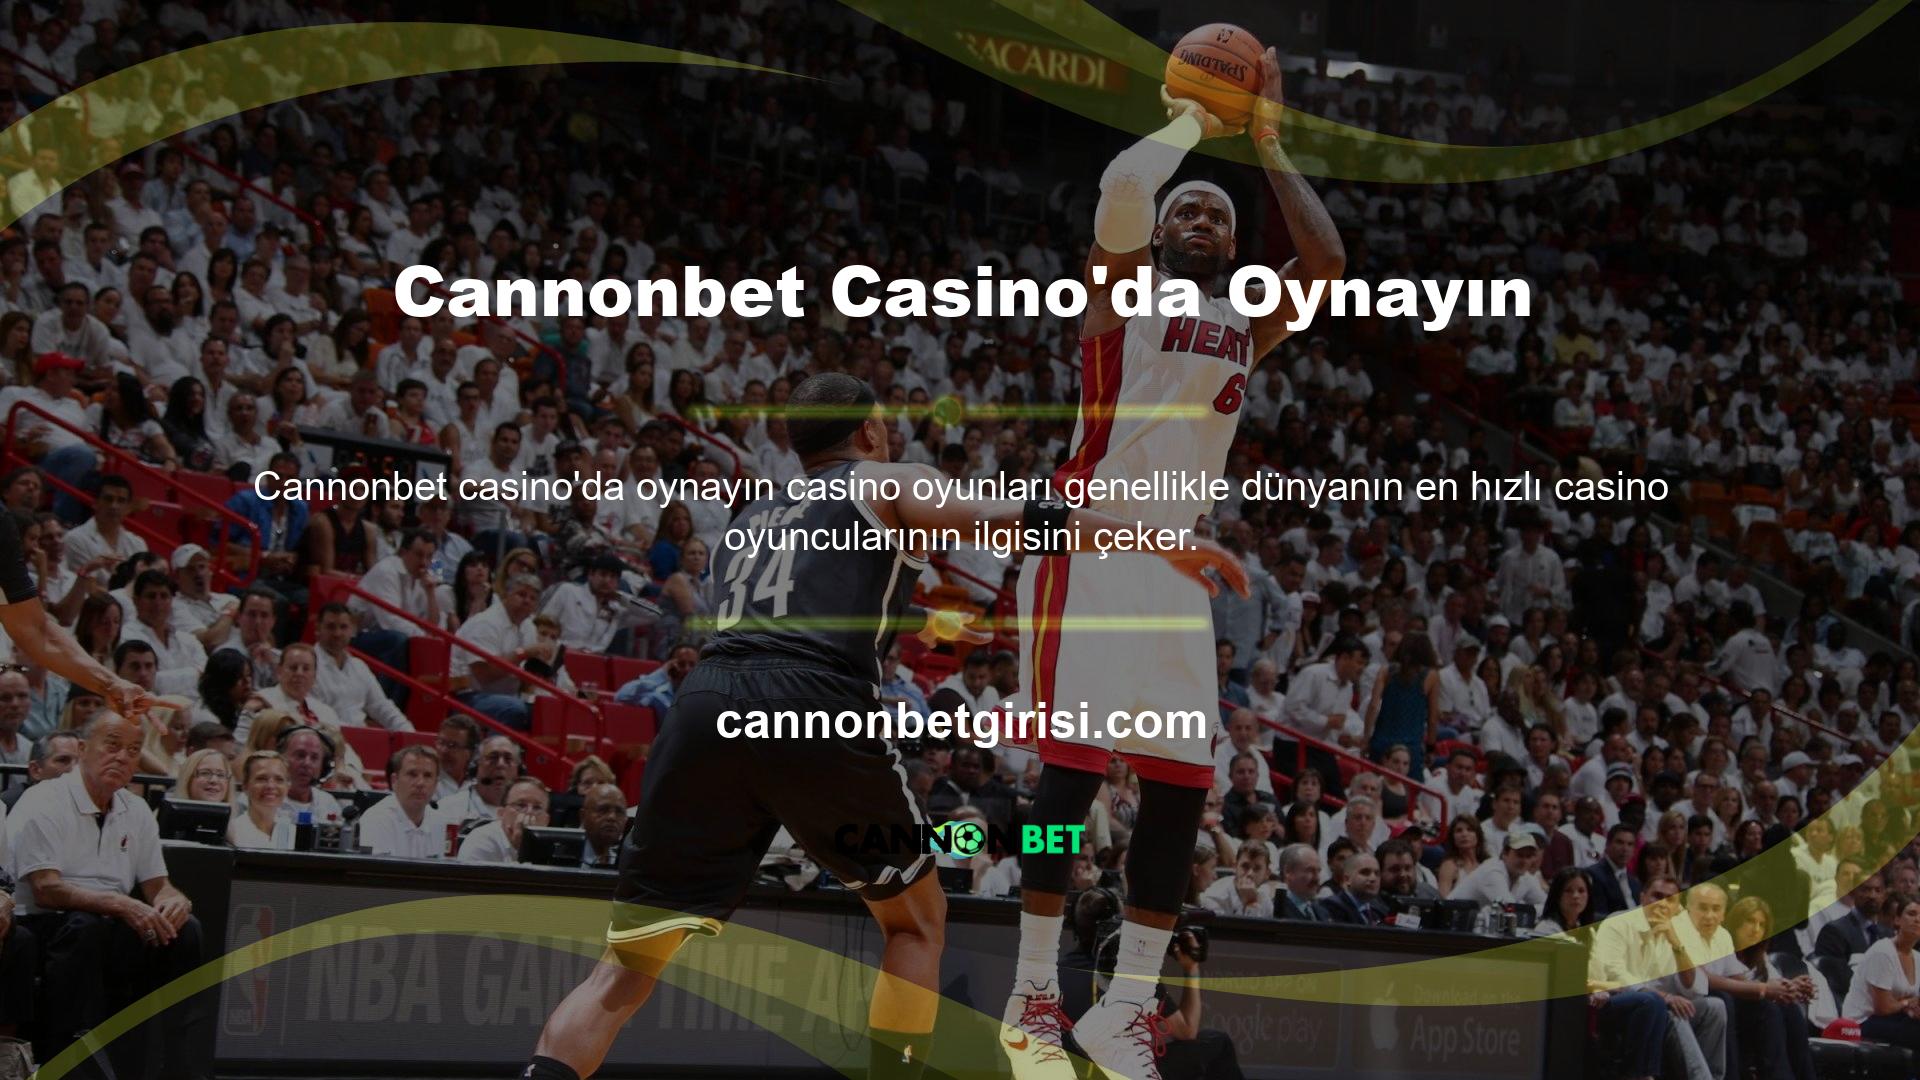 Cannonbet Virtual Casino'daki oyunlar, canlı casino oyunlarının yanı sıra hem yeni kreasyonları hem de klasik olarak kabul edilen oyunları içermektedir